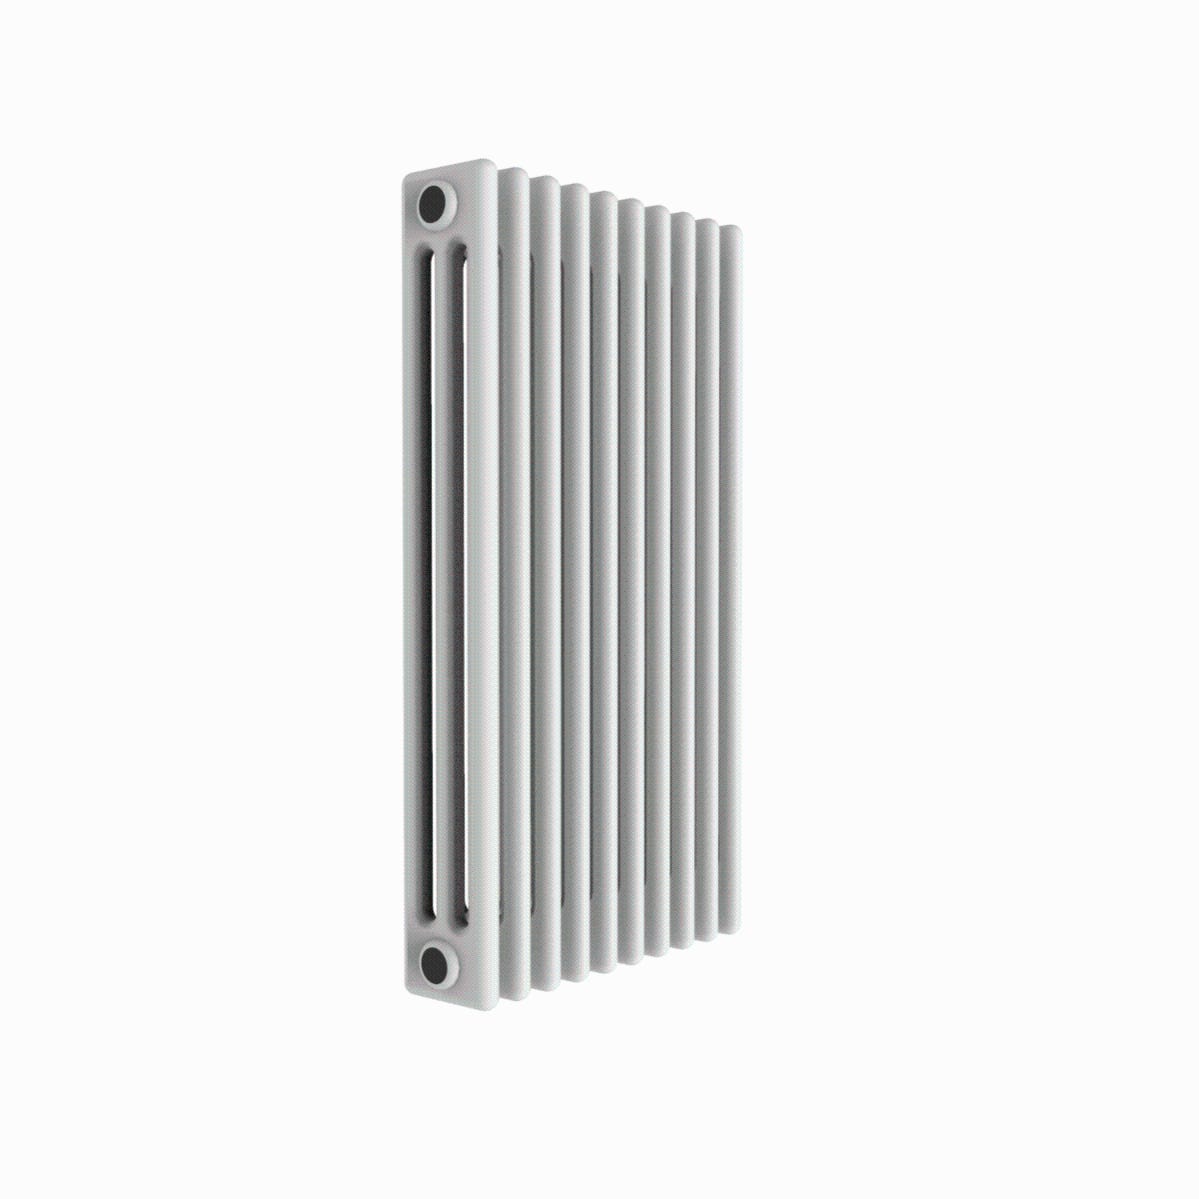 Radiatore acqua calda DE'LONGHI Marvys in alluminio, 10 elementi interasse  60 cm, bianco